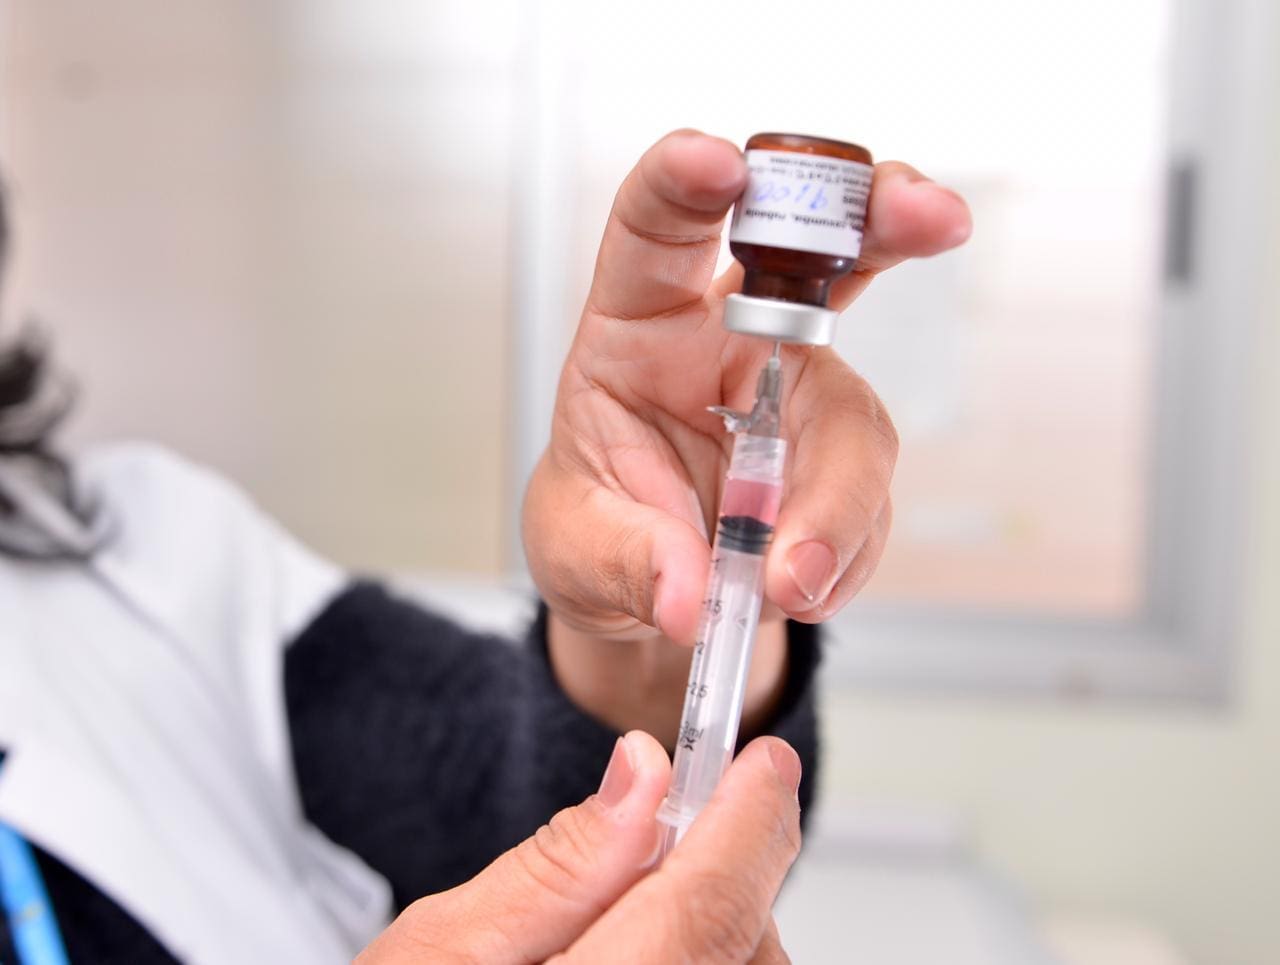 Documento federal recomenda otimização e uso racional da vacina durante o período